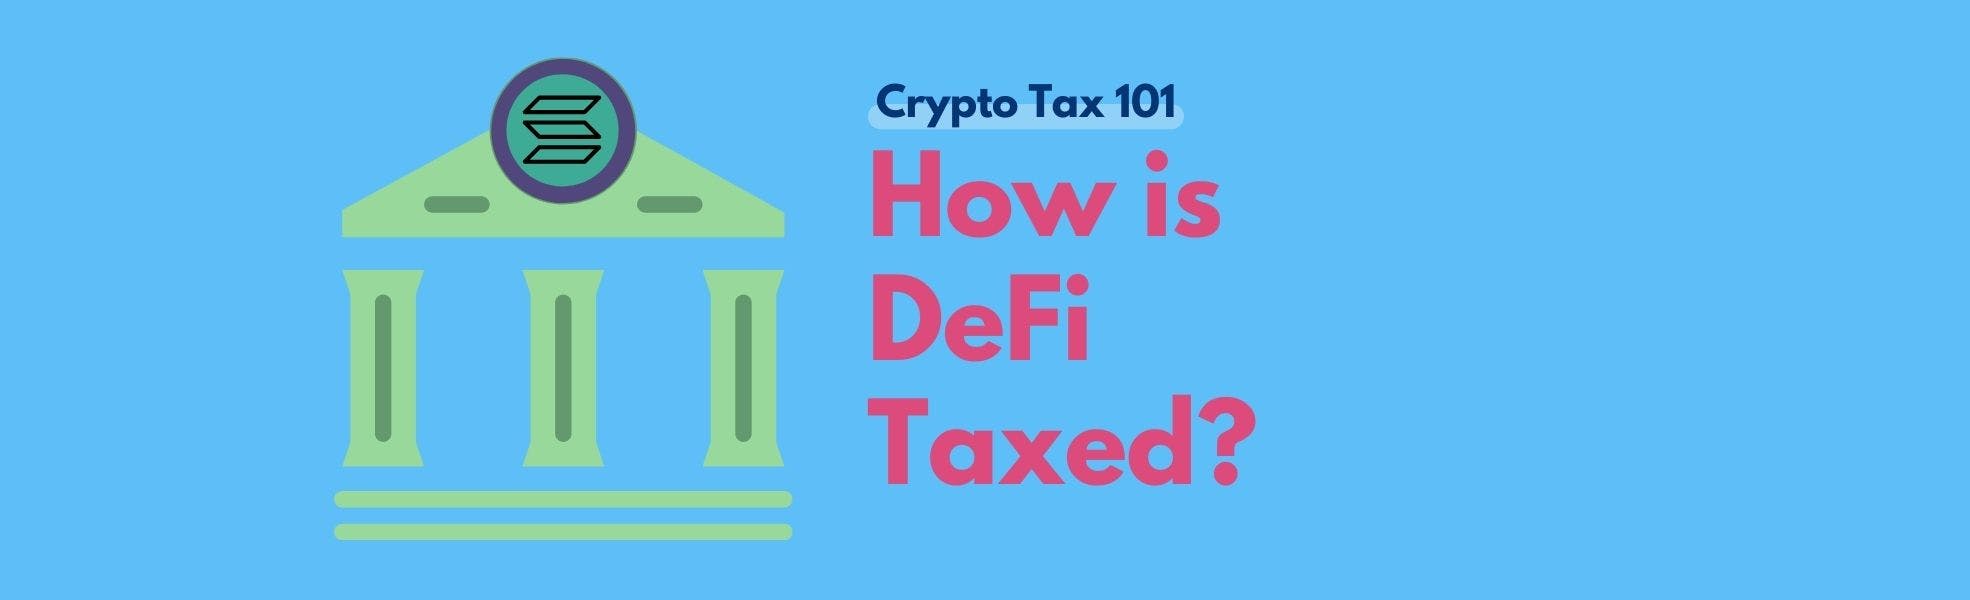 Koinly Crypto Tax Calculator Explains DeFi Tax